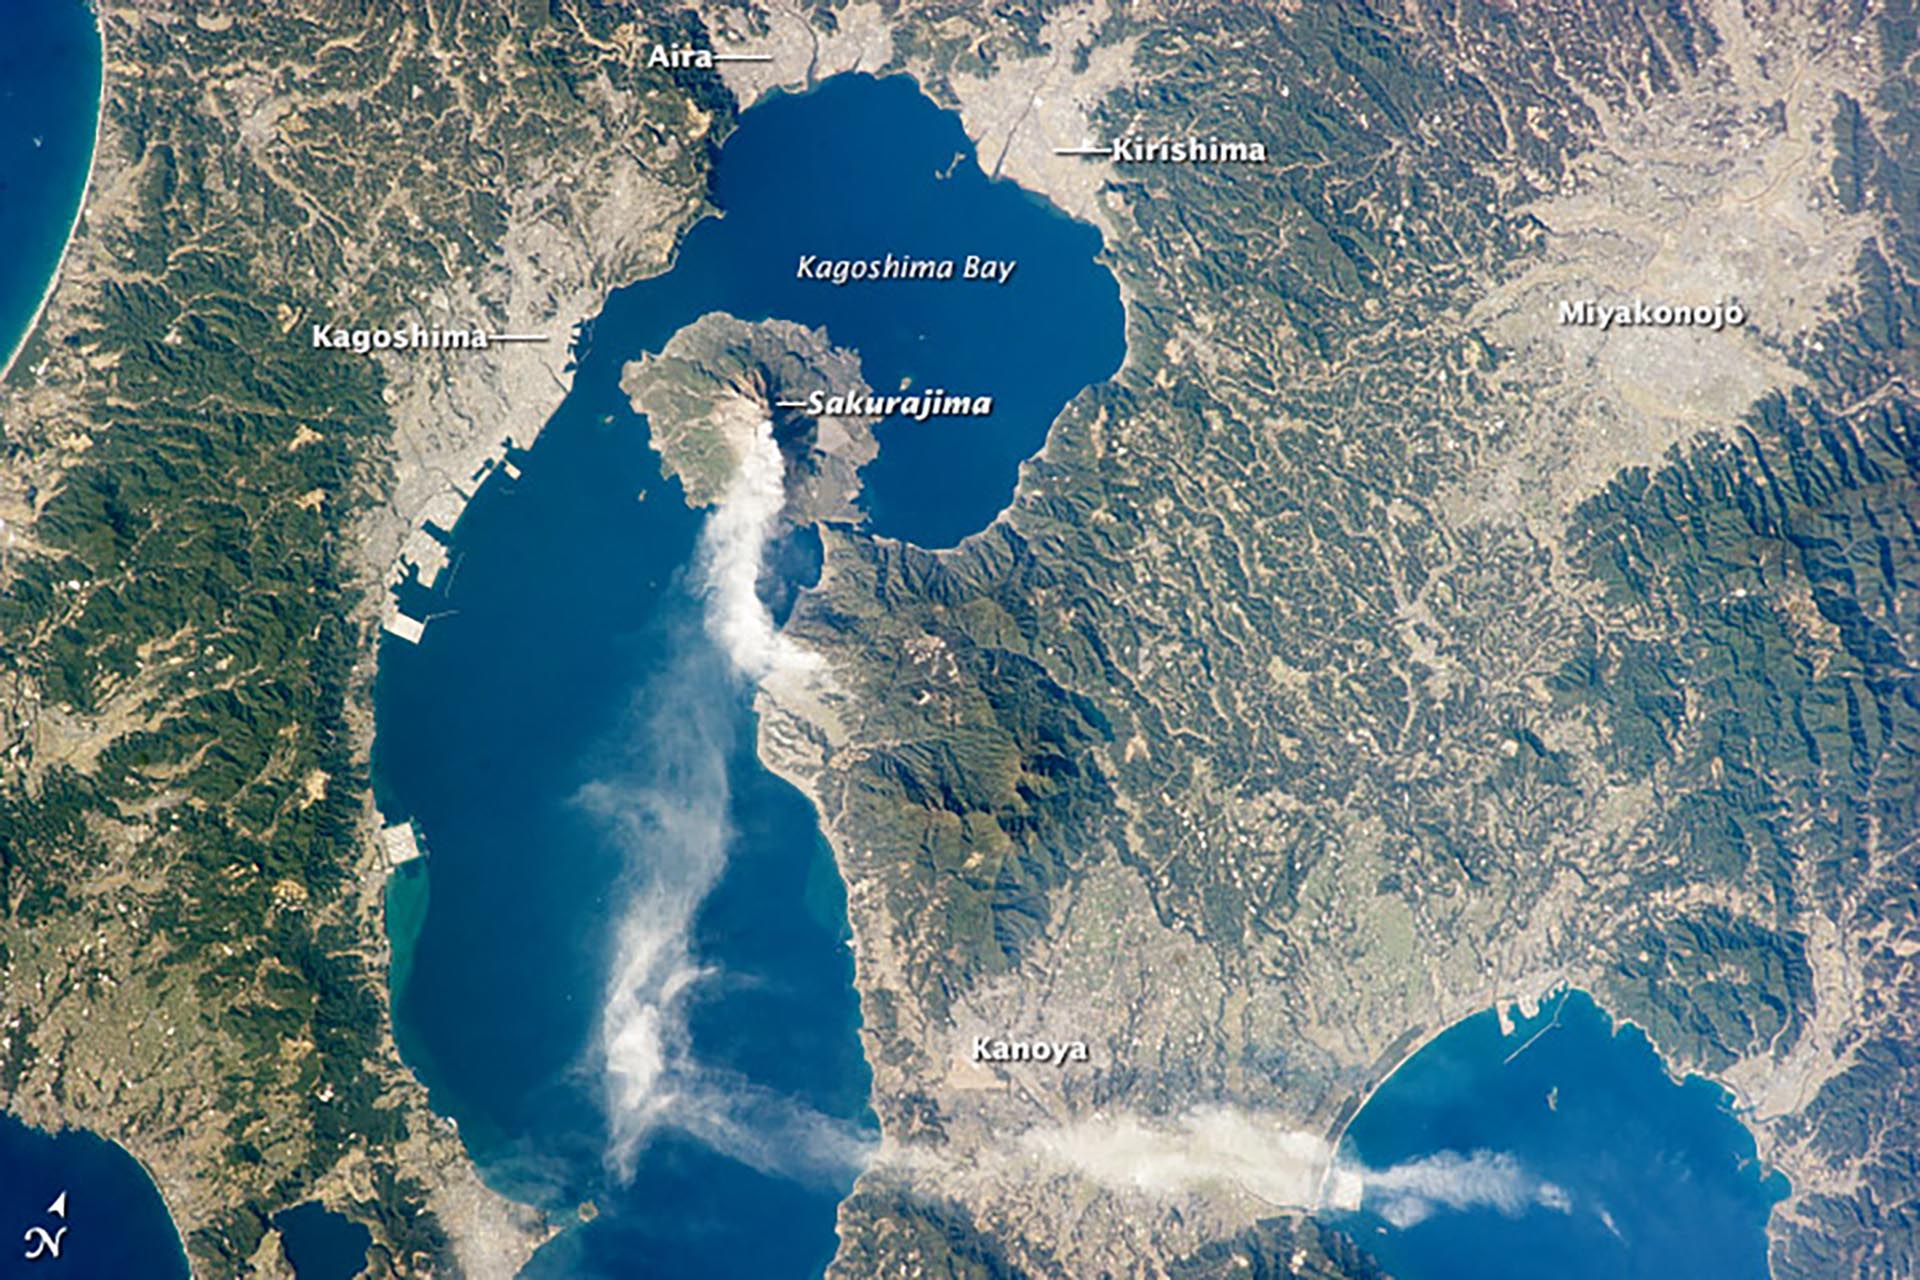 Immagine satellitare di una nuvola di fumo dall'attività di Sakurajima.